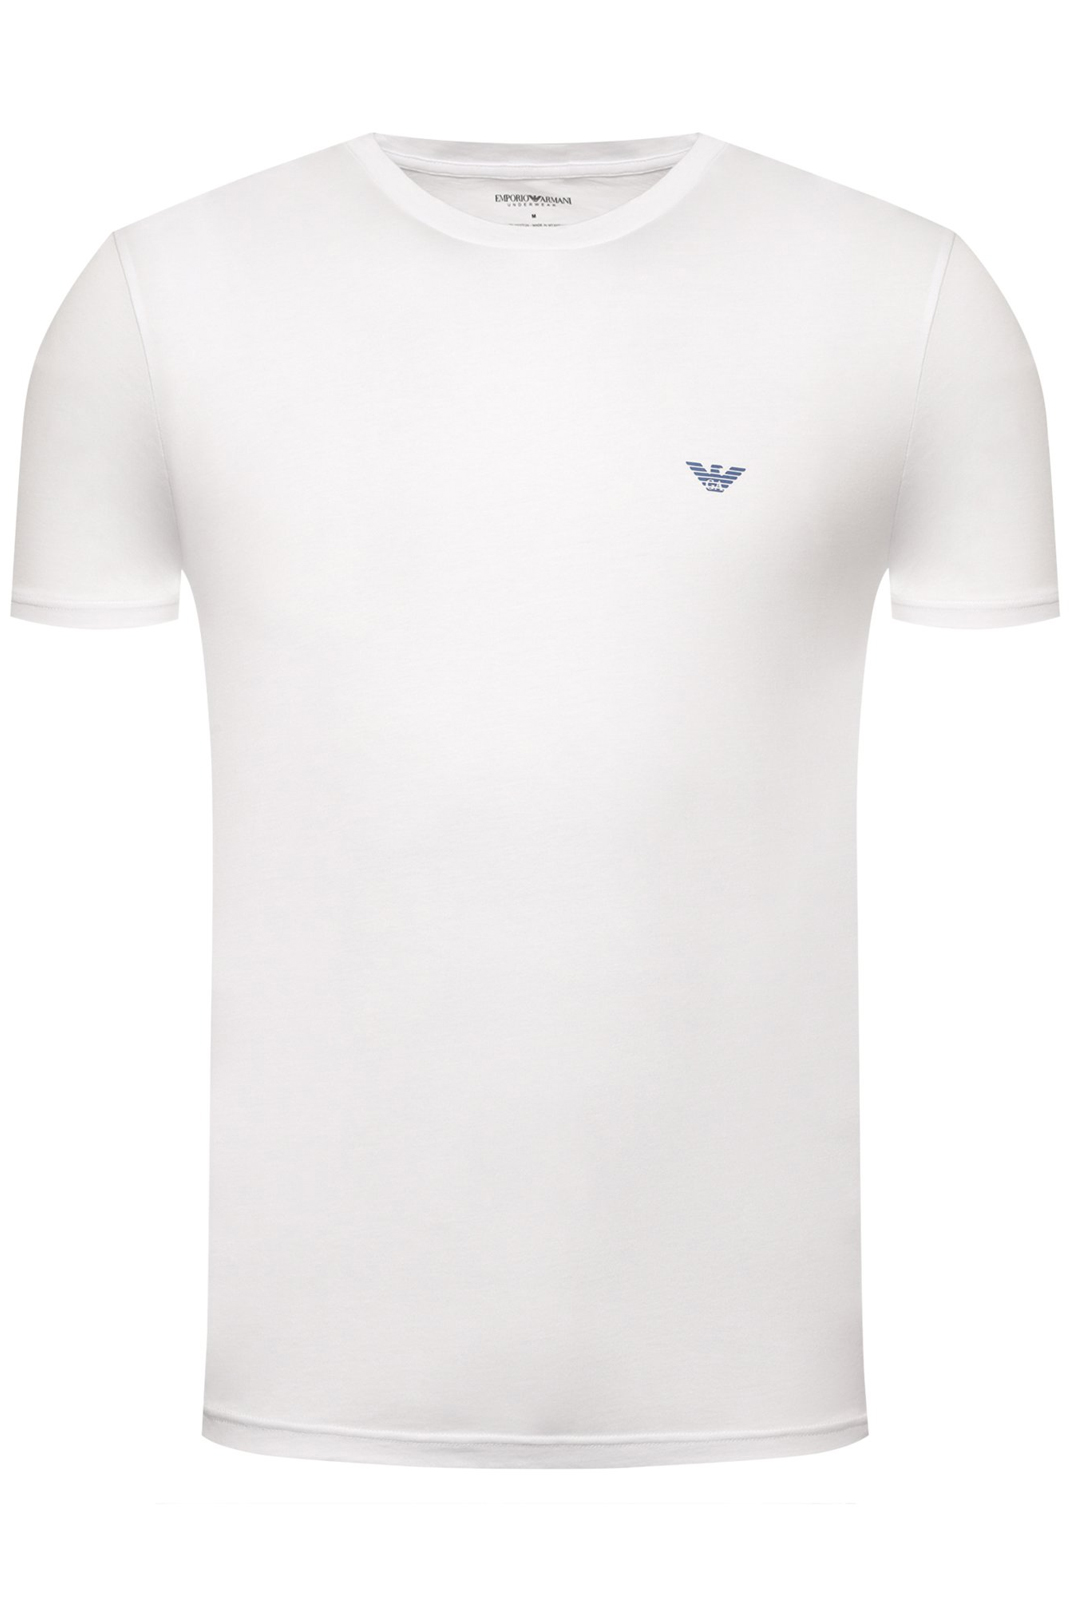 T-shirt Emporio Armani pour homme en coloris Blanc Homme T-shirts T-shirts Emporio Armani 